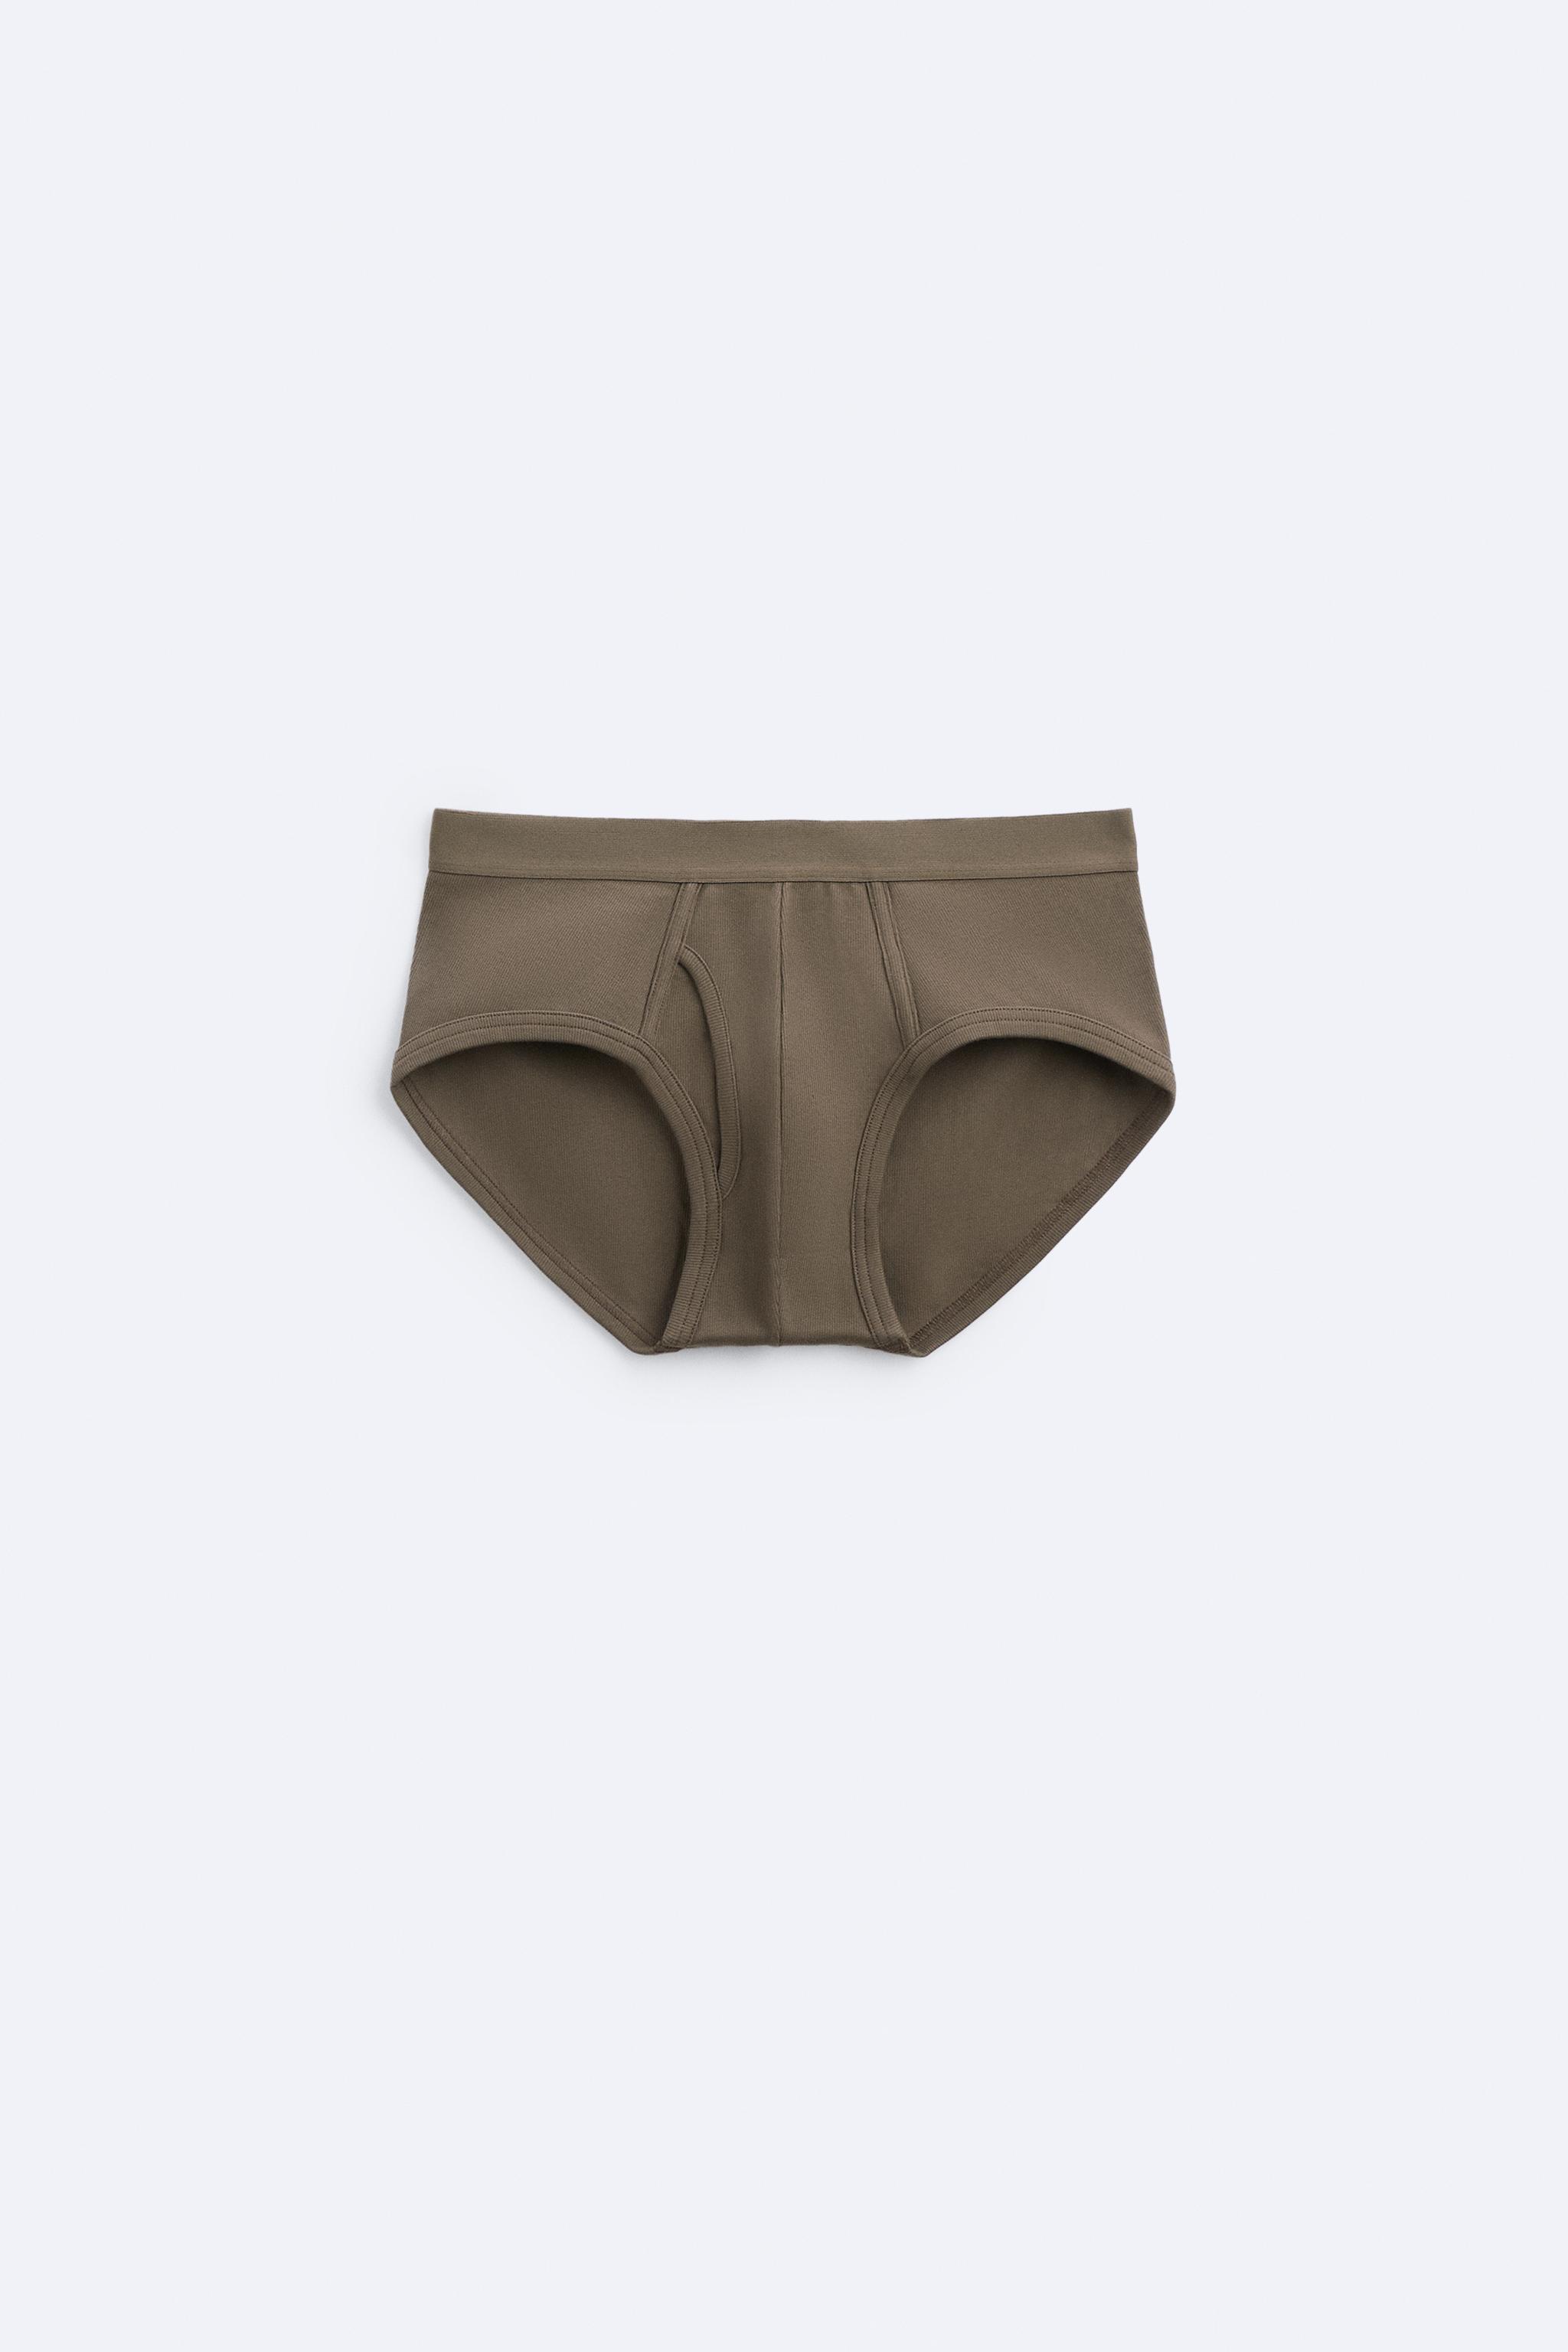 Zara underwear (boxer / trunk), size M, Men's Fashion, Bottoms